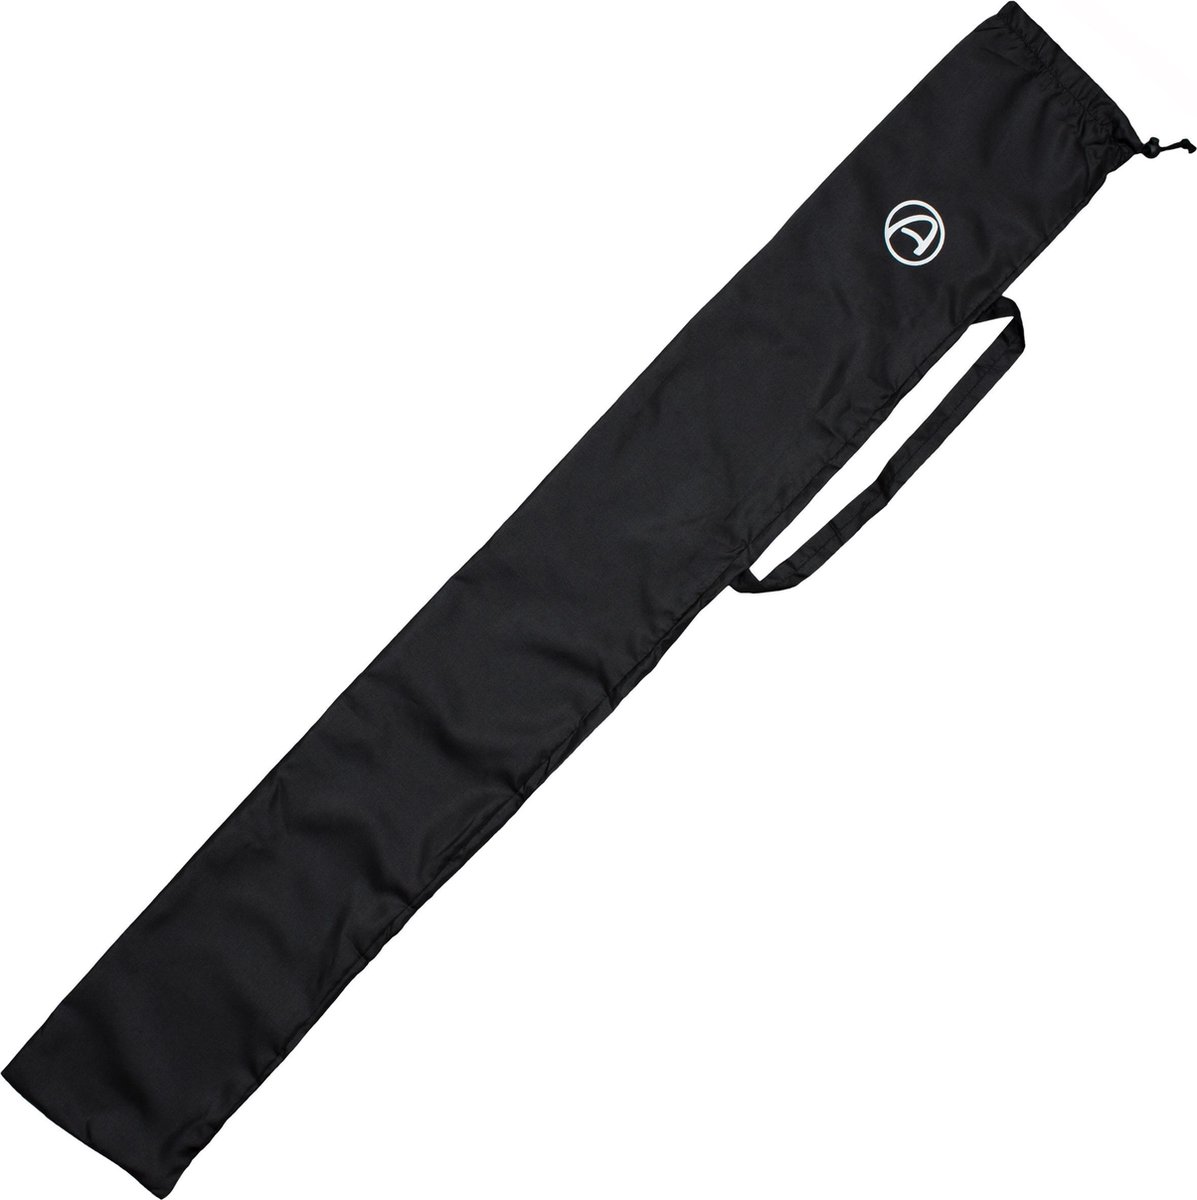 DIDGERIDOOTAS 125 cm - Didgeridoo tas gemaakt van nylon. Bell Ø 8 cm. Inclusief draagriem | bekijk de video!